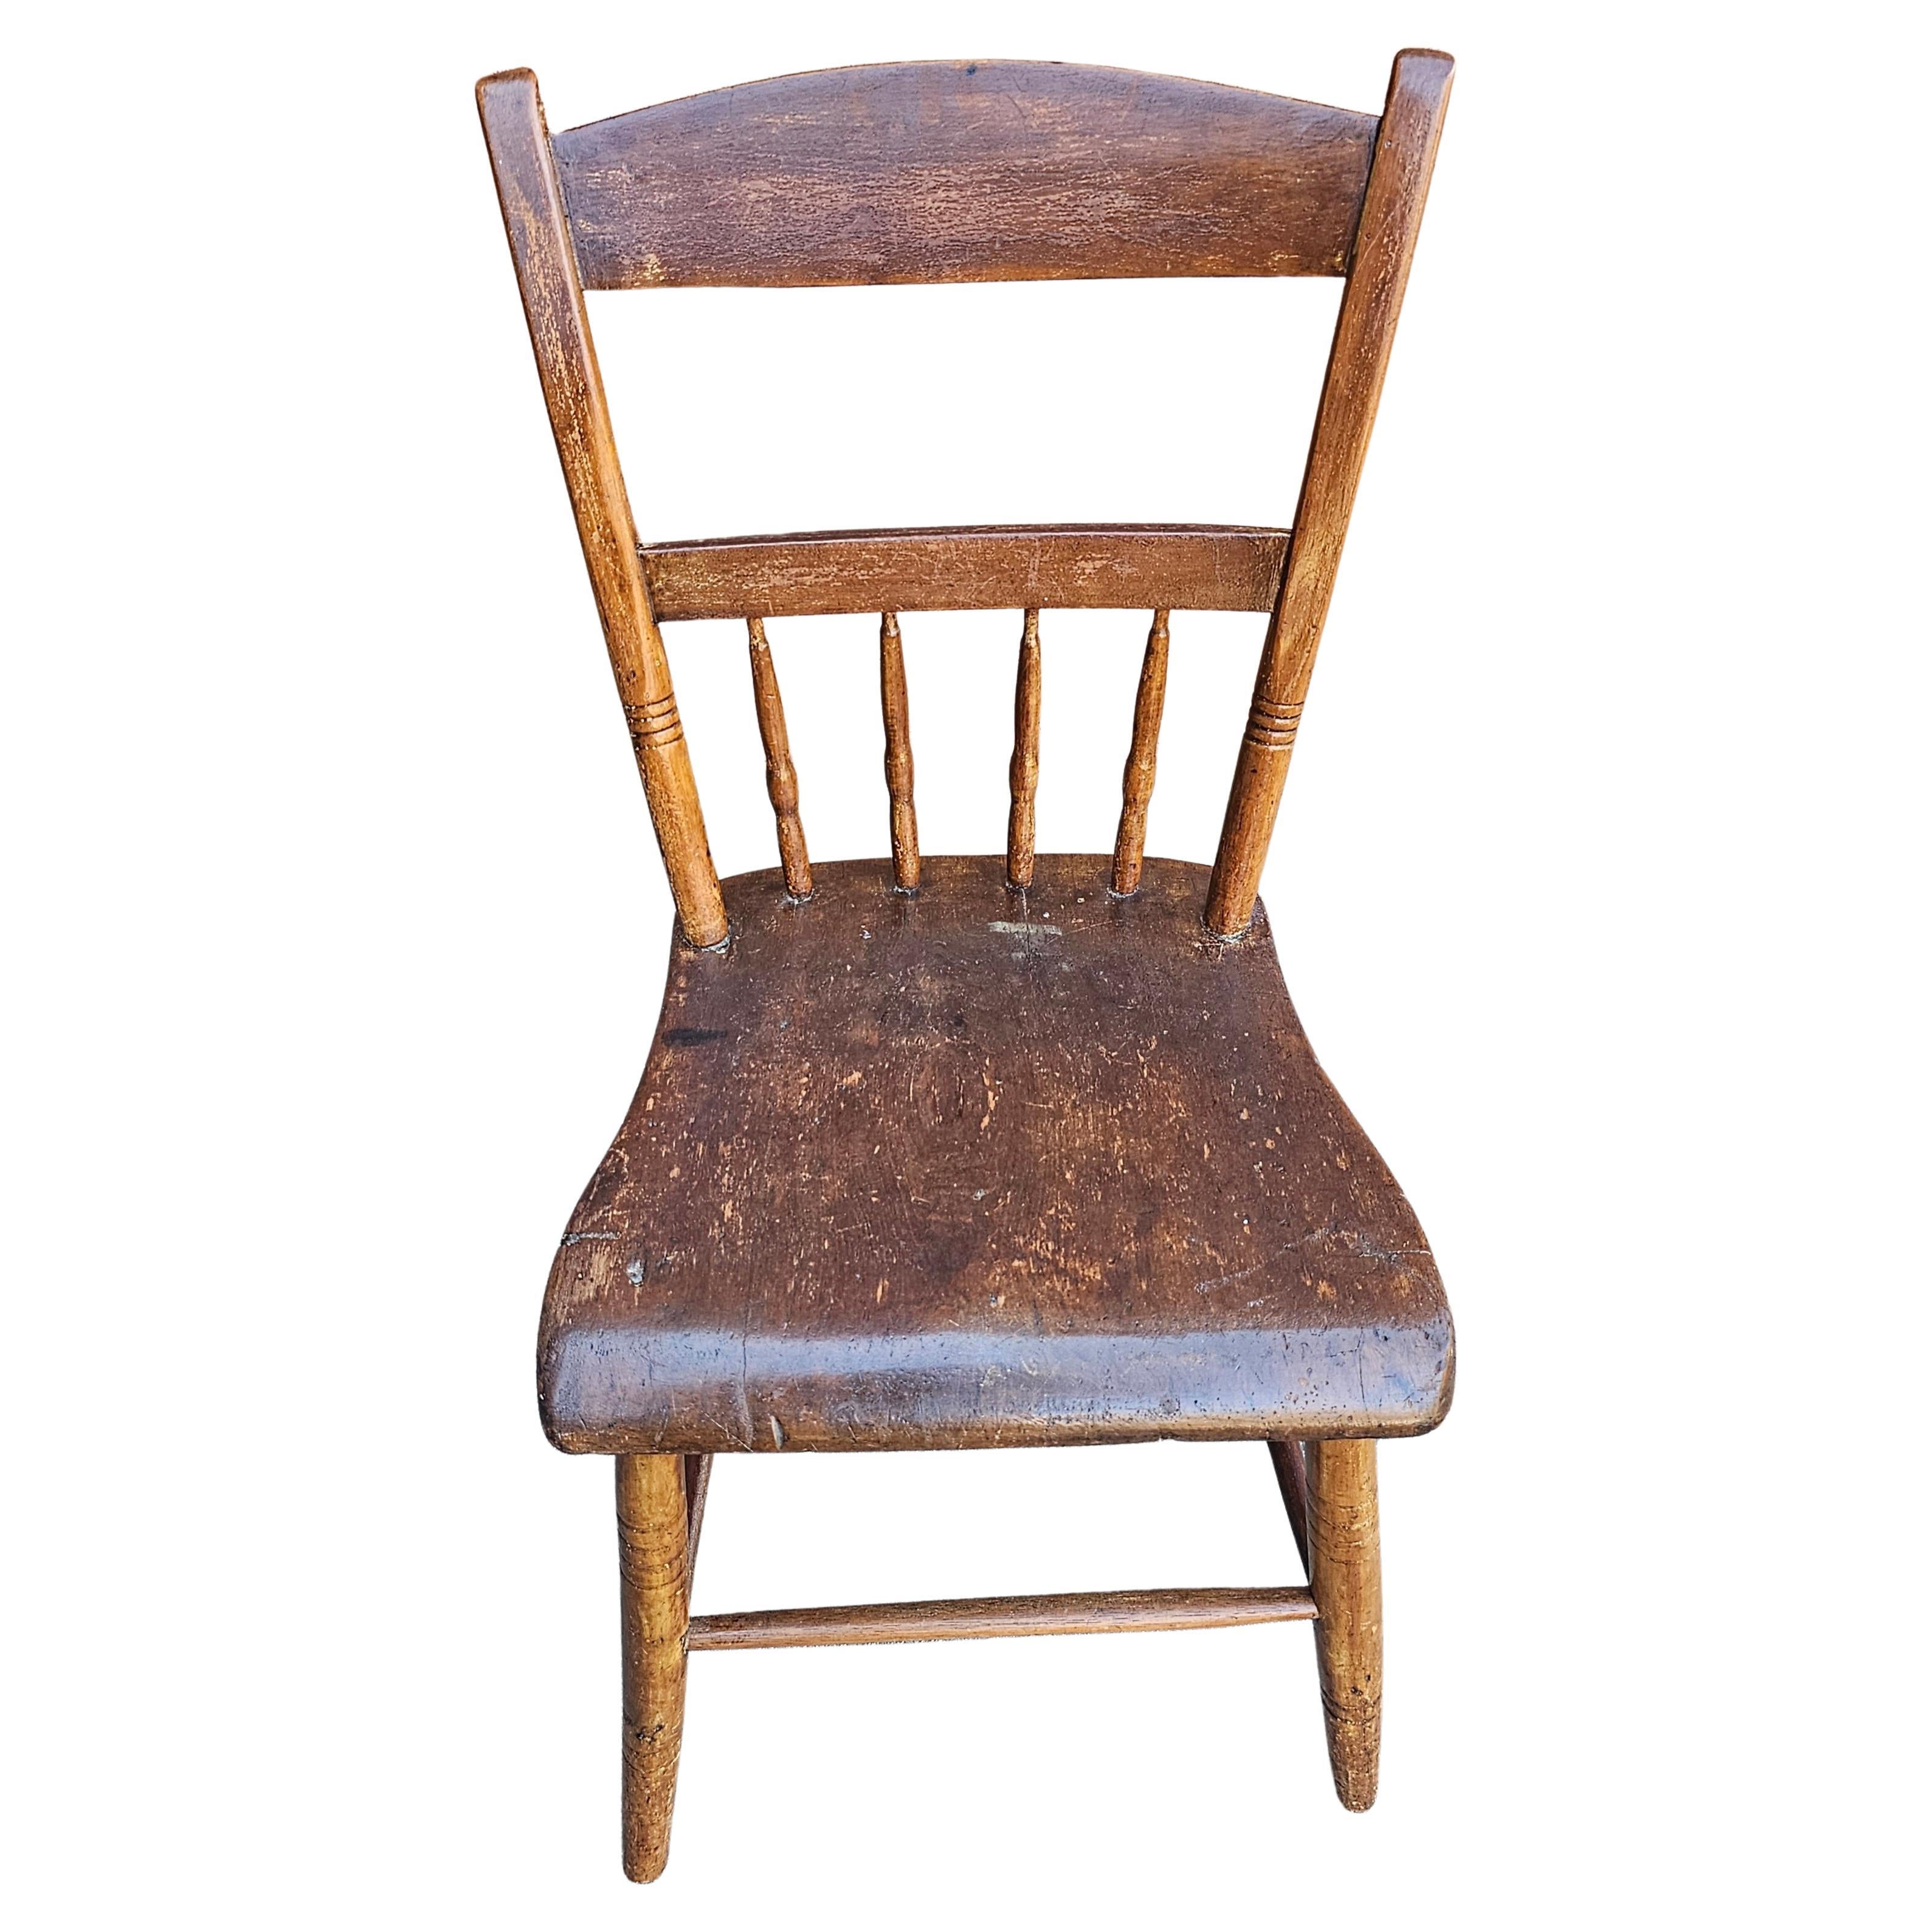 Ein 19. Jahrhundert frühen amerikanischen Stil Ahorn Leiter und Spindel zurück Plank Side Chair. Es ist eine schöne Ergänzung zu Ihrer Sammlung. Misst 17